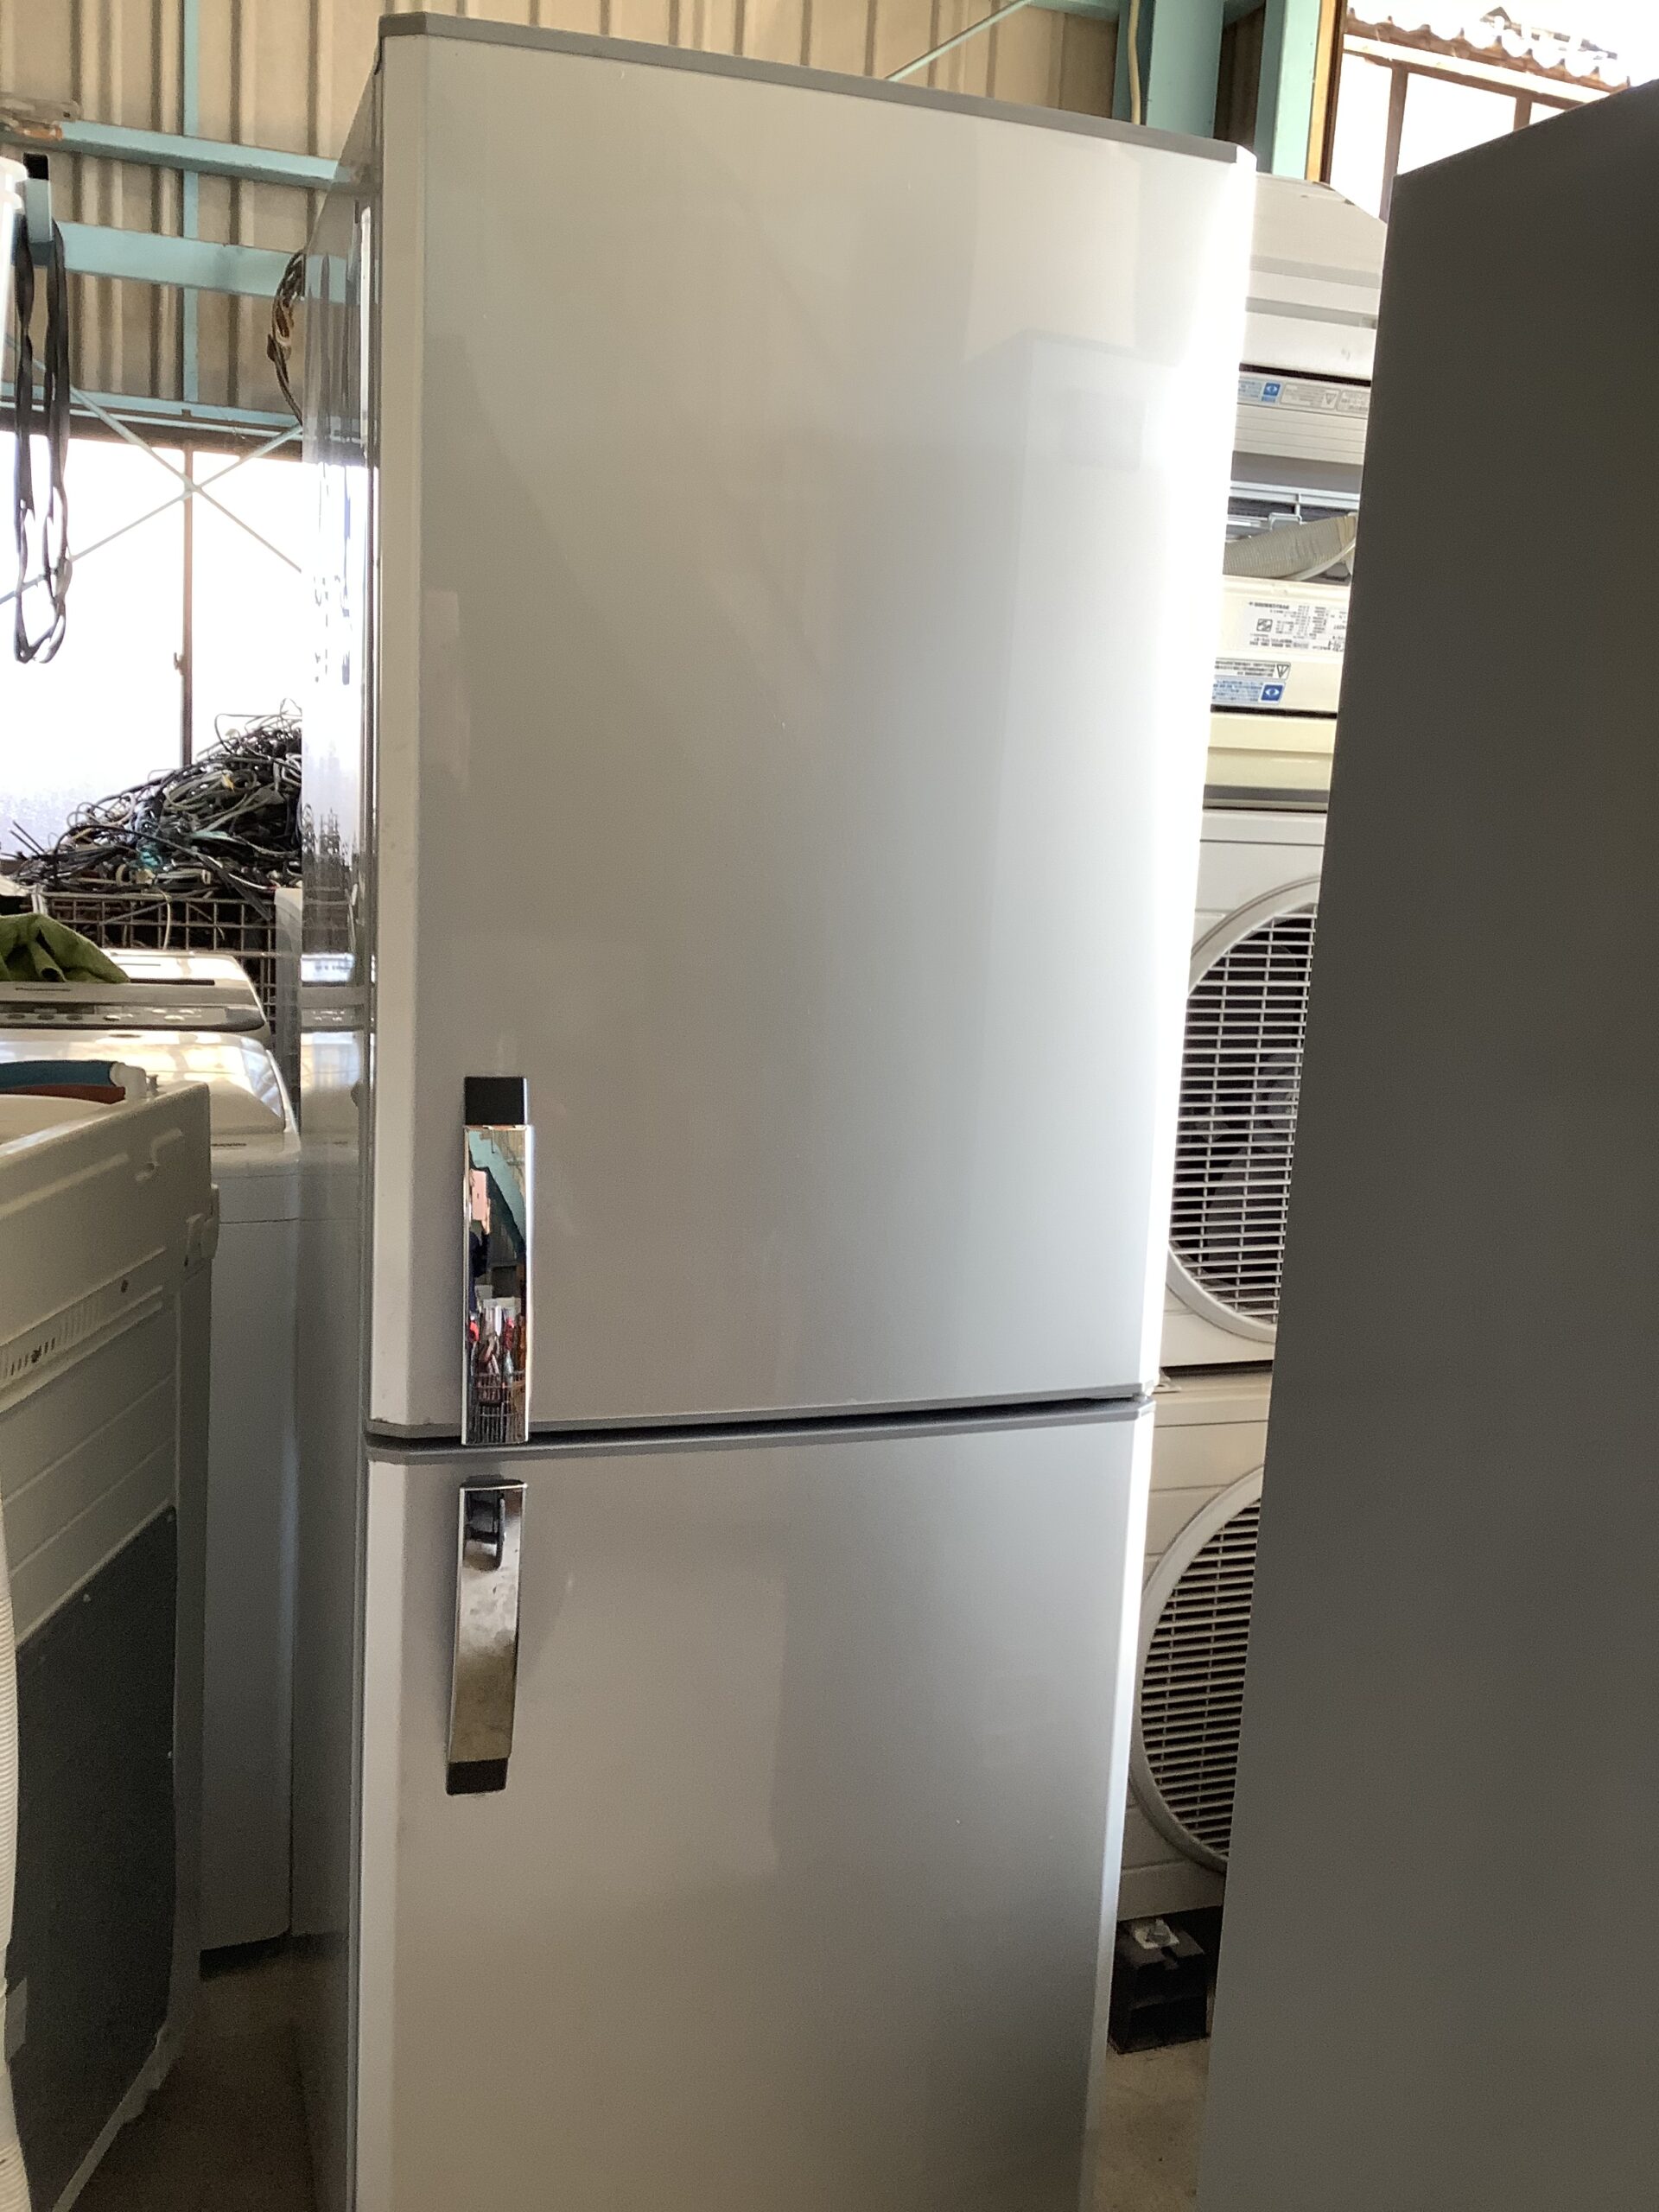 福山市新涯町で回収した冷蔵庫